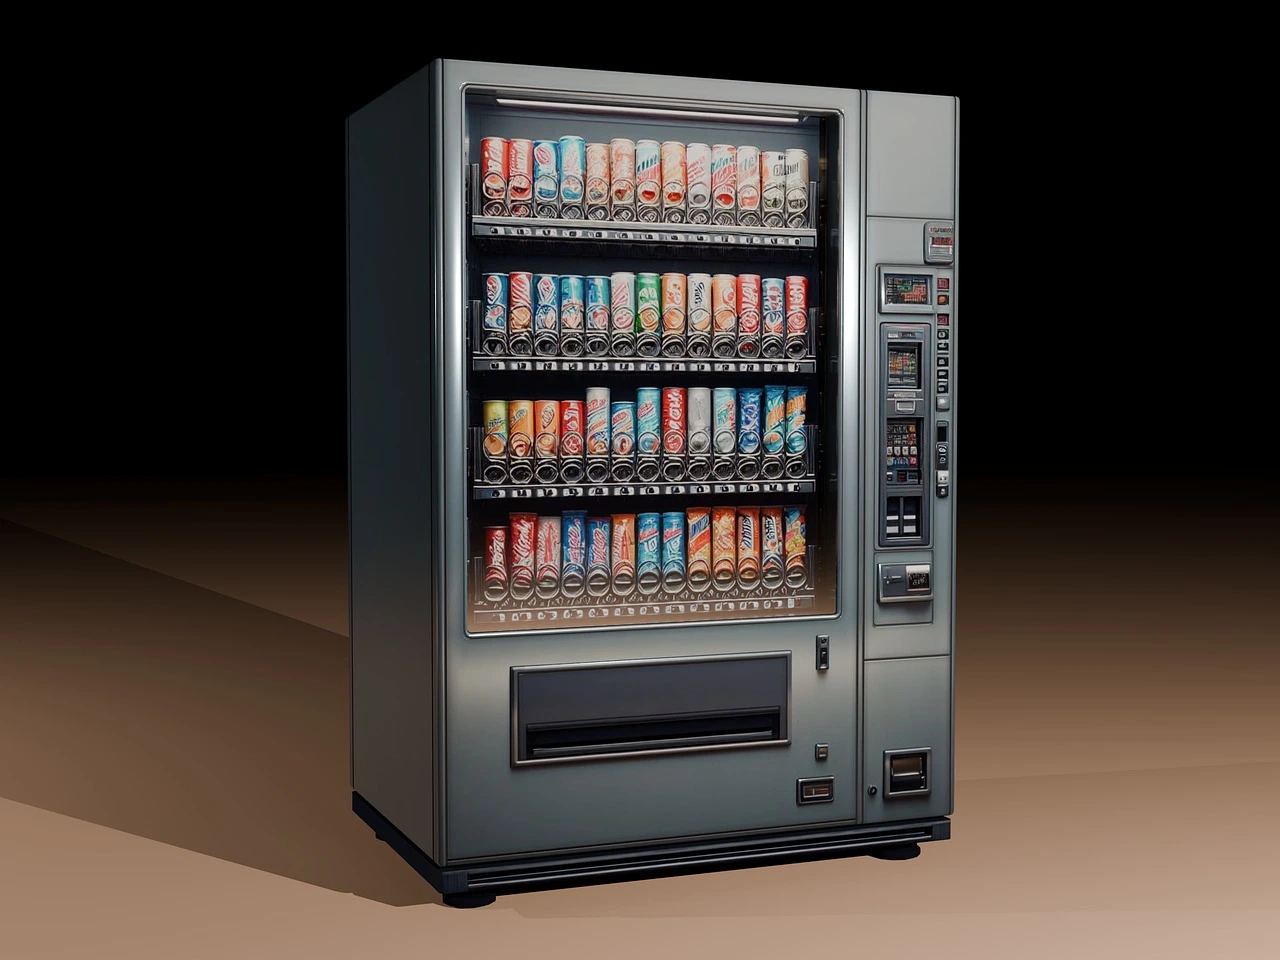 Gambar vending machine atau mesin penjual otomatis